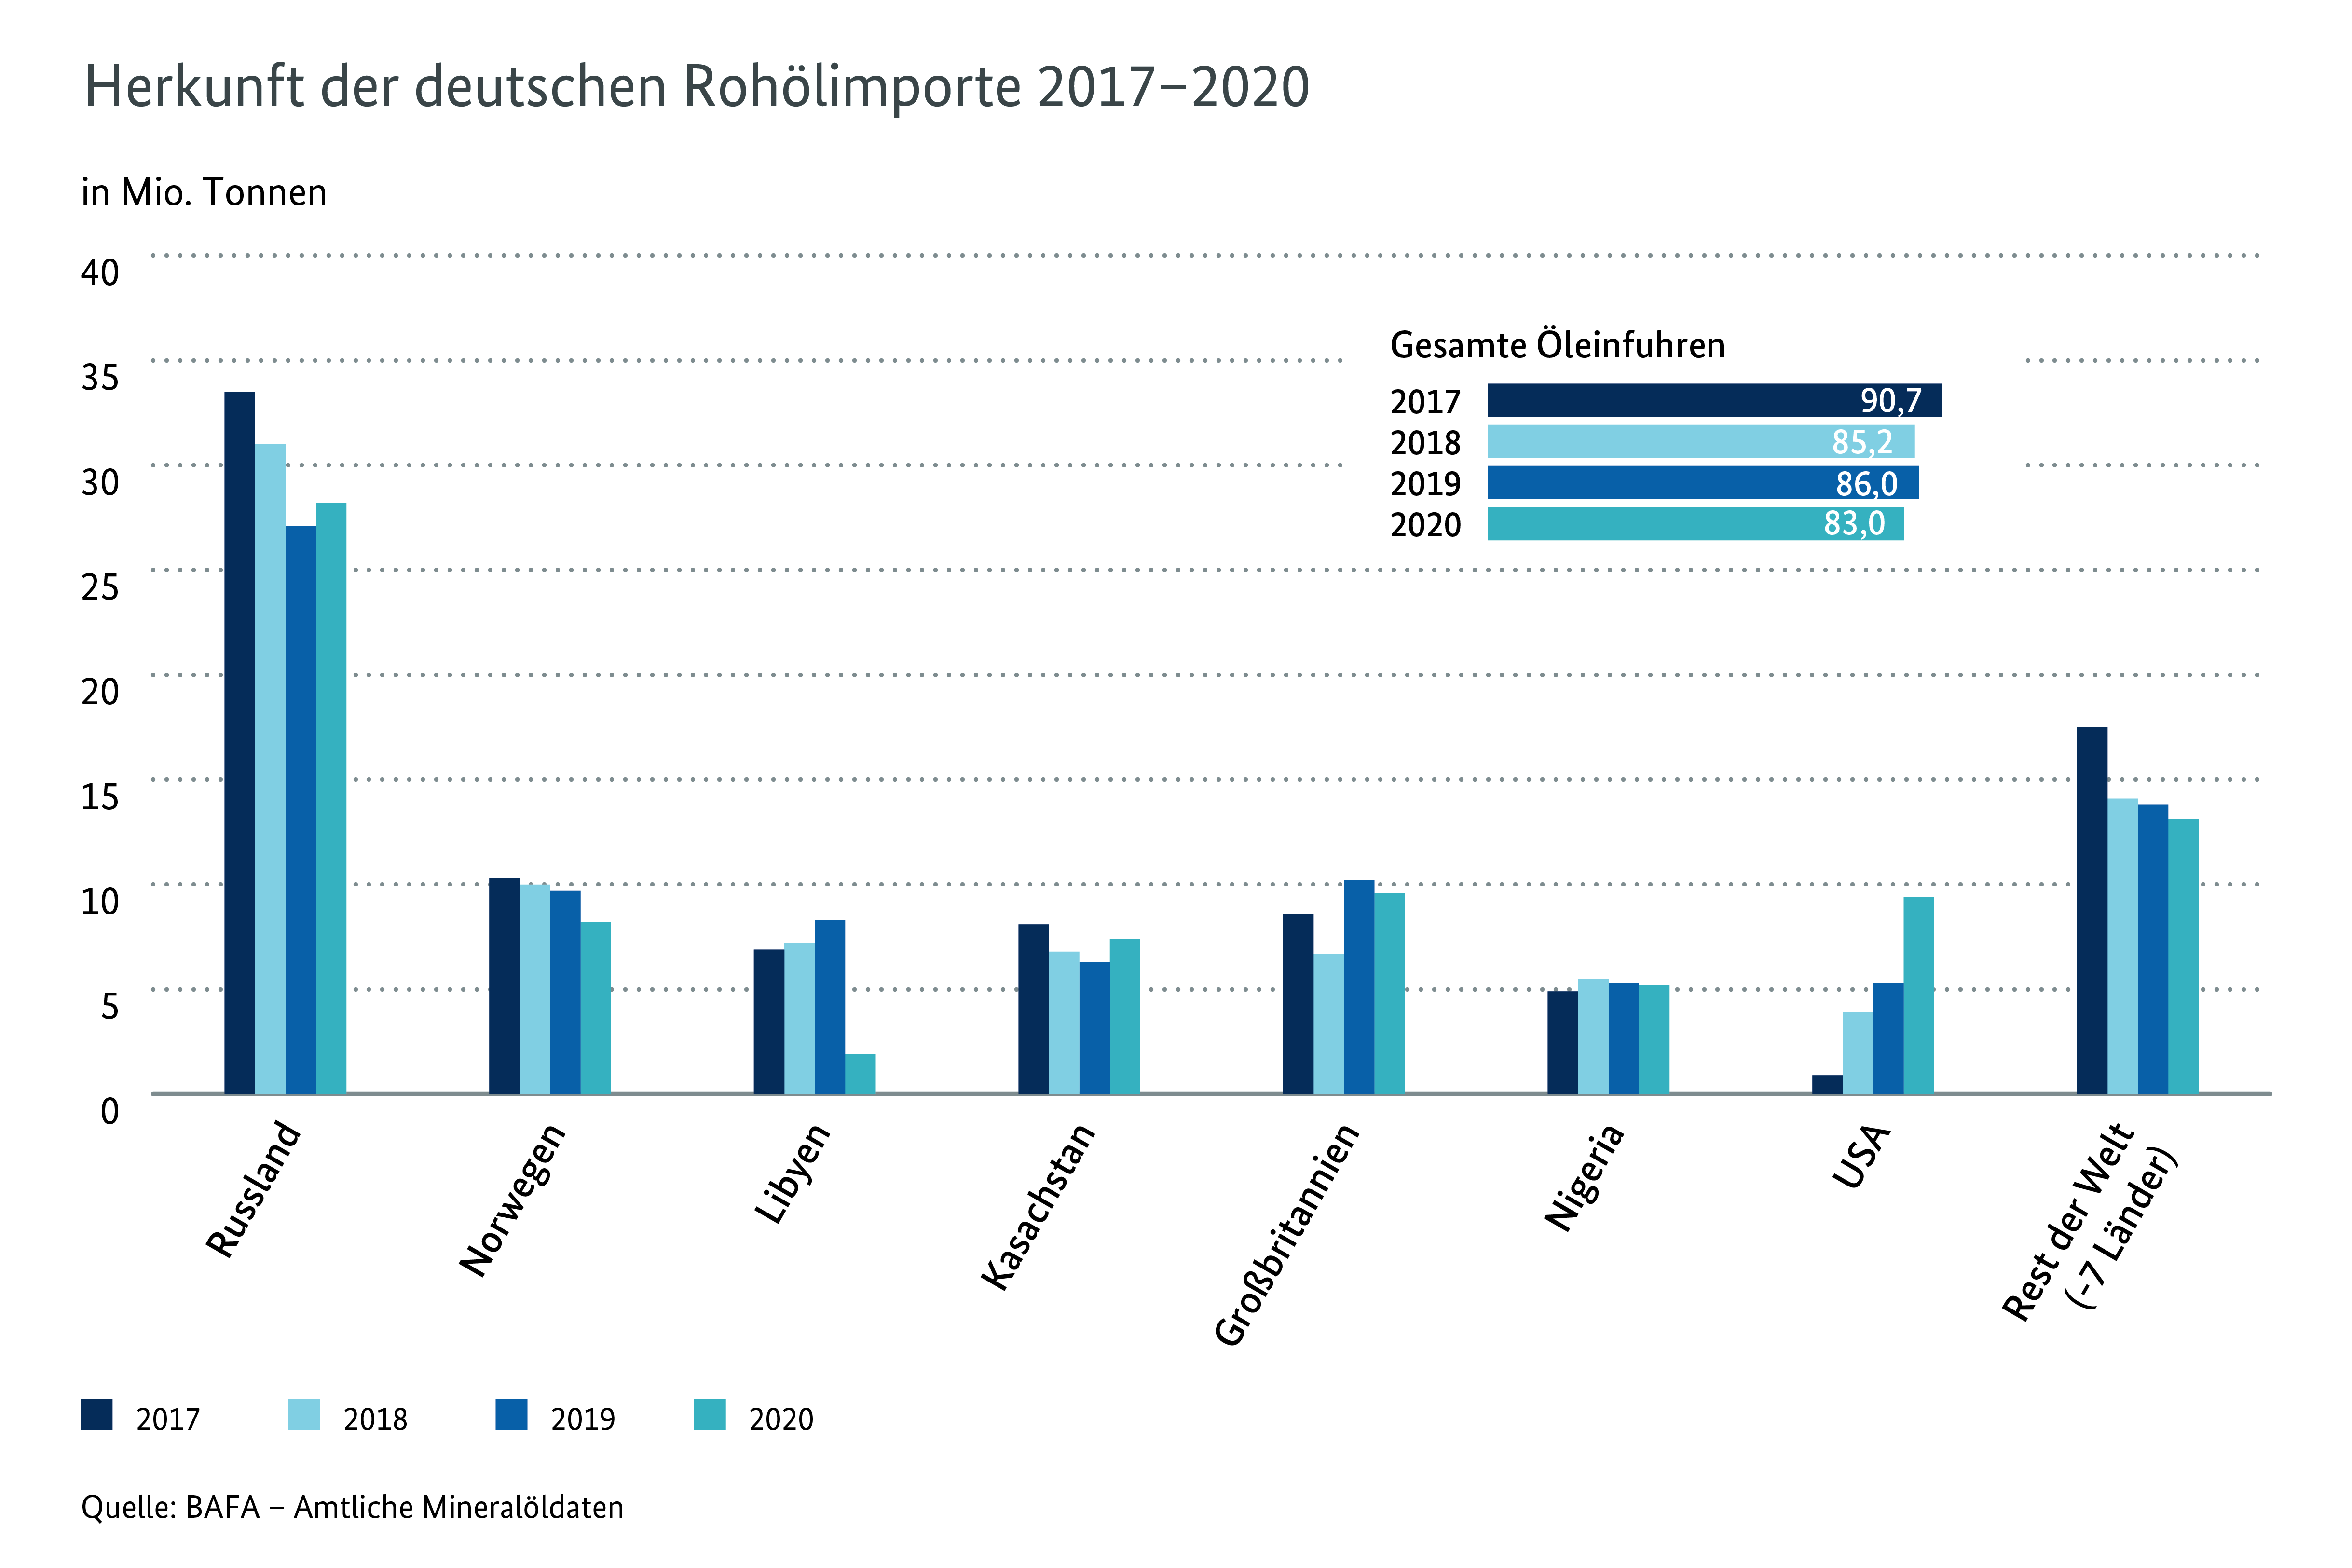 Herkunft deutscher Rohöleinfuhren 2017 - 2020 in Millionen Tonnen